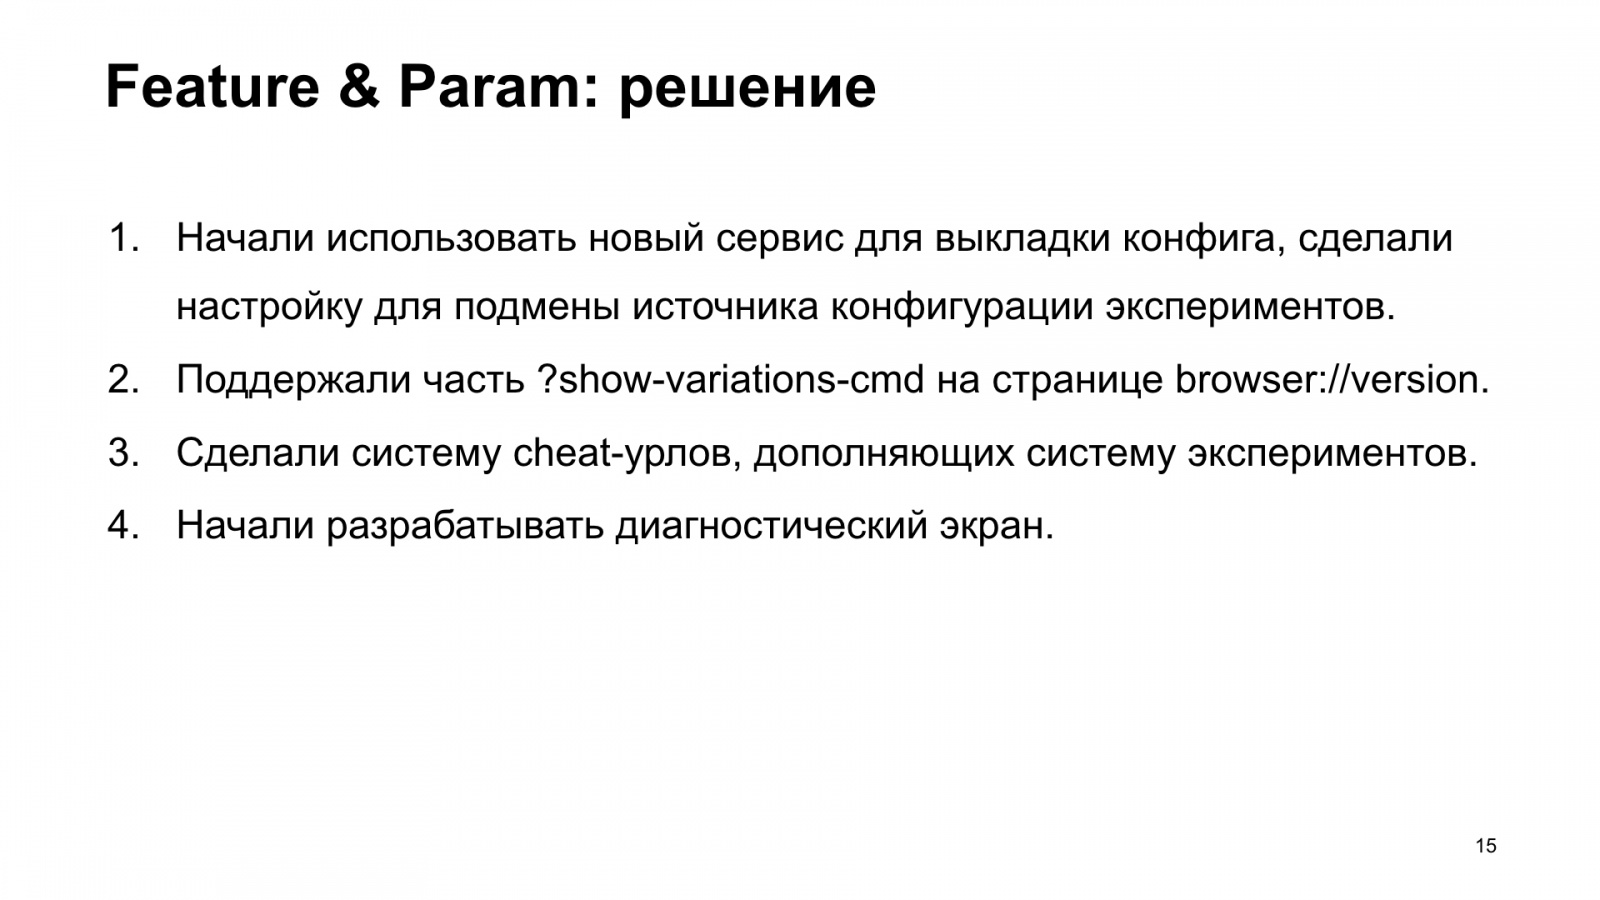 Как Браузер для iOS А-Б-тестирование улучшал. Доклад Яндекса - 16